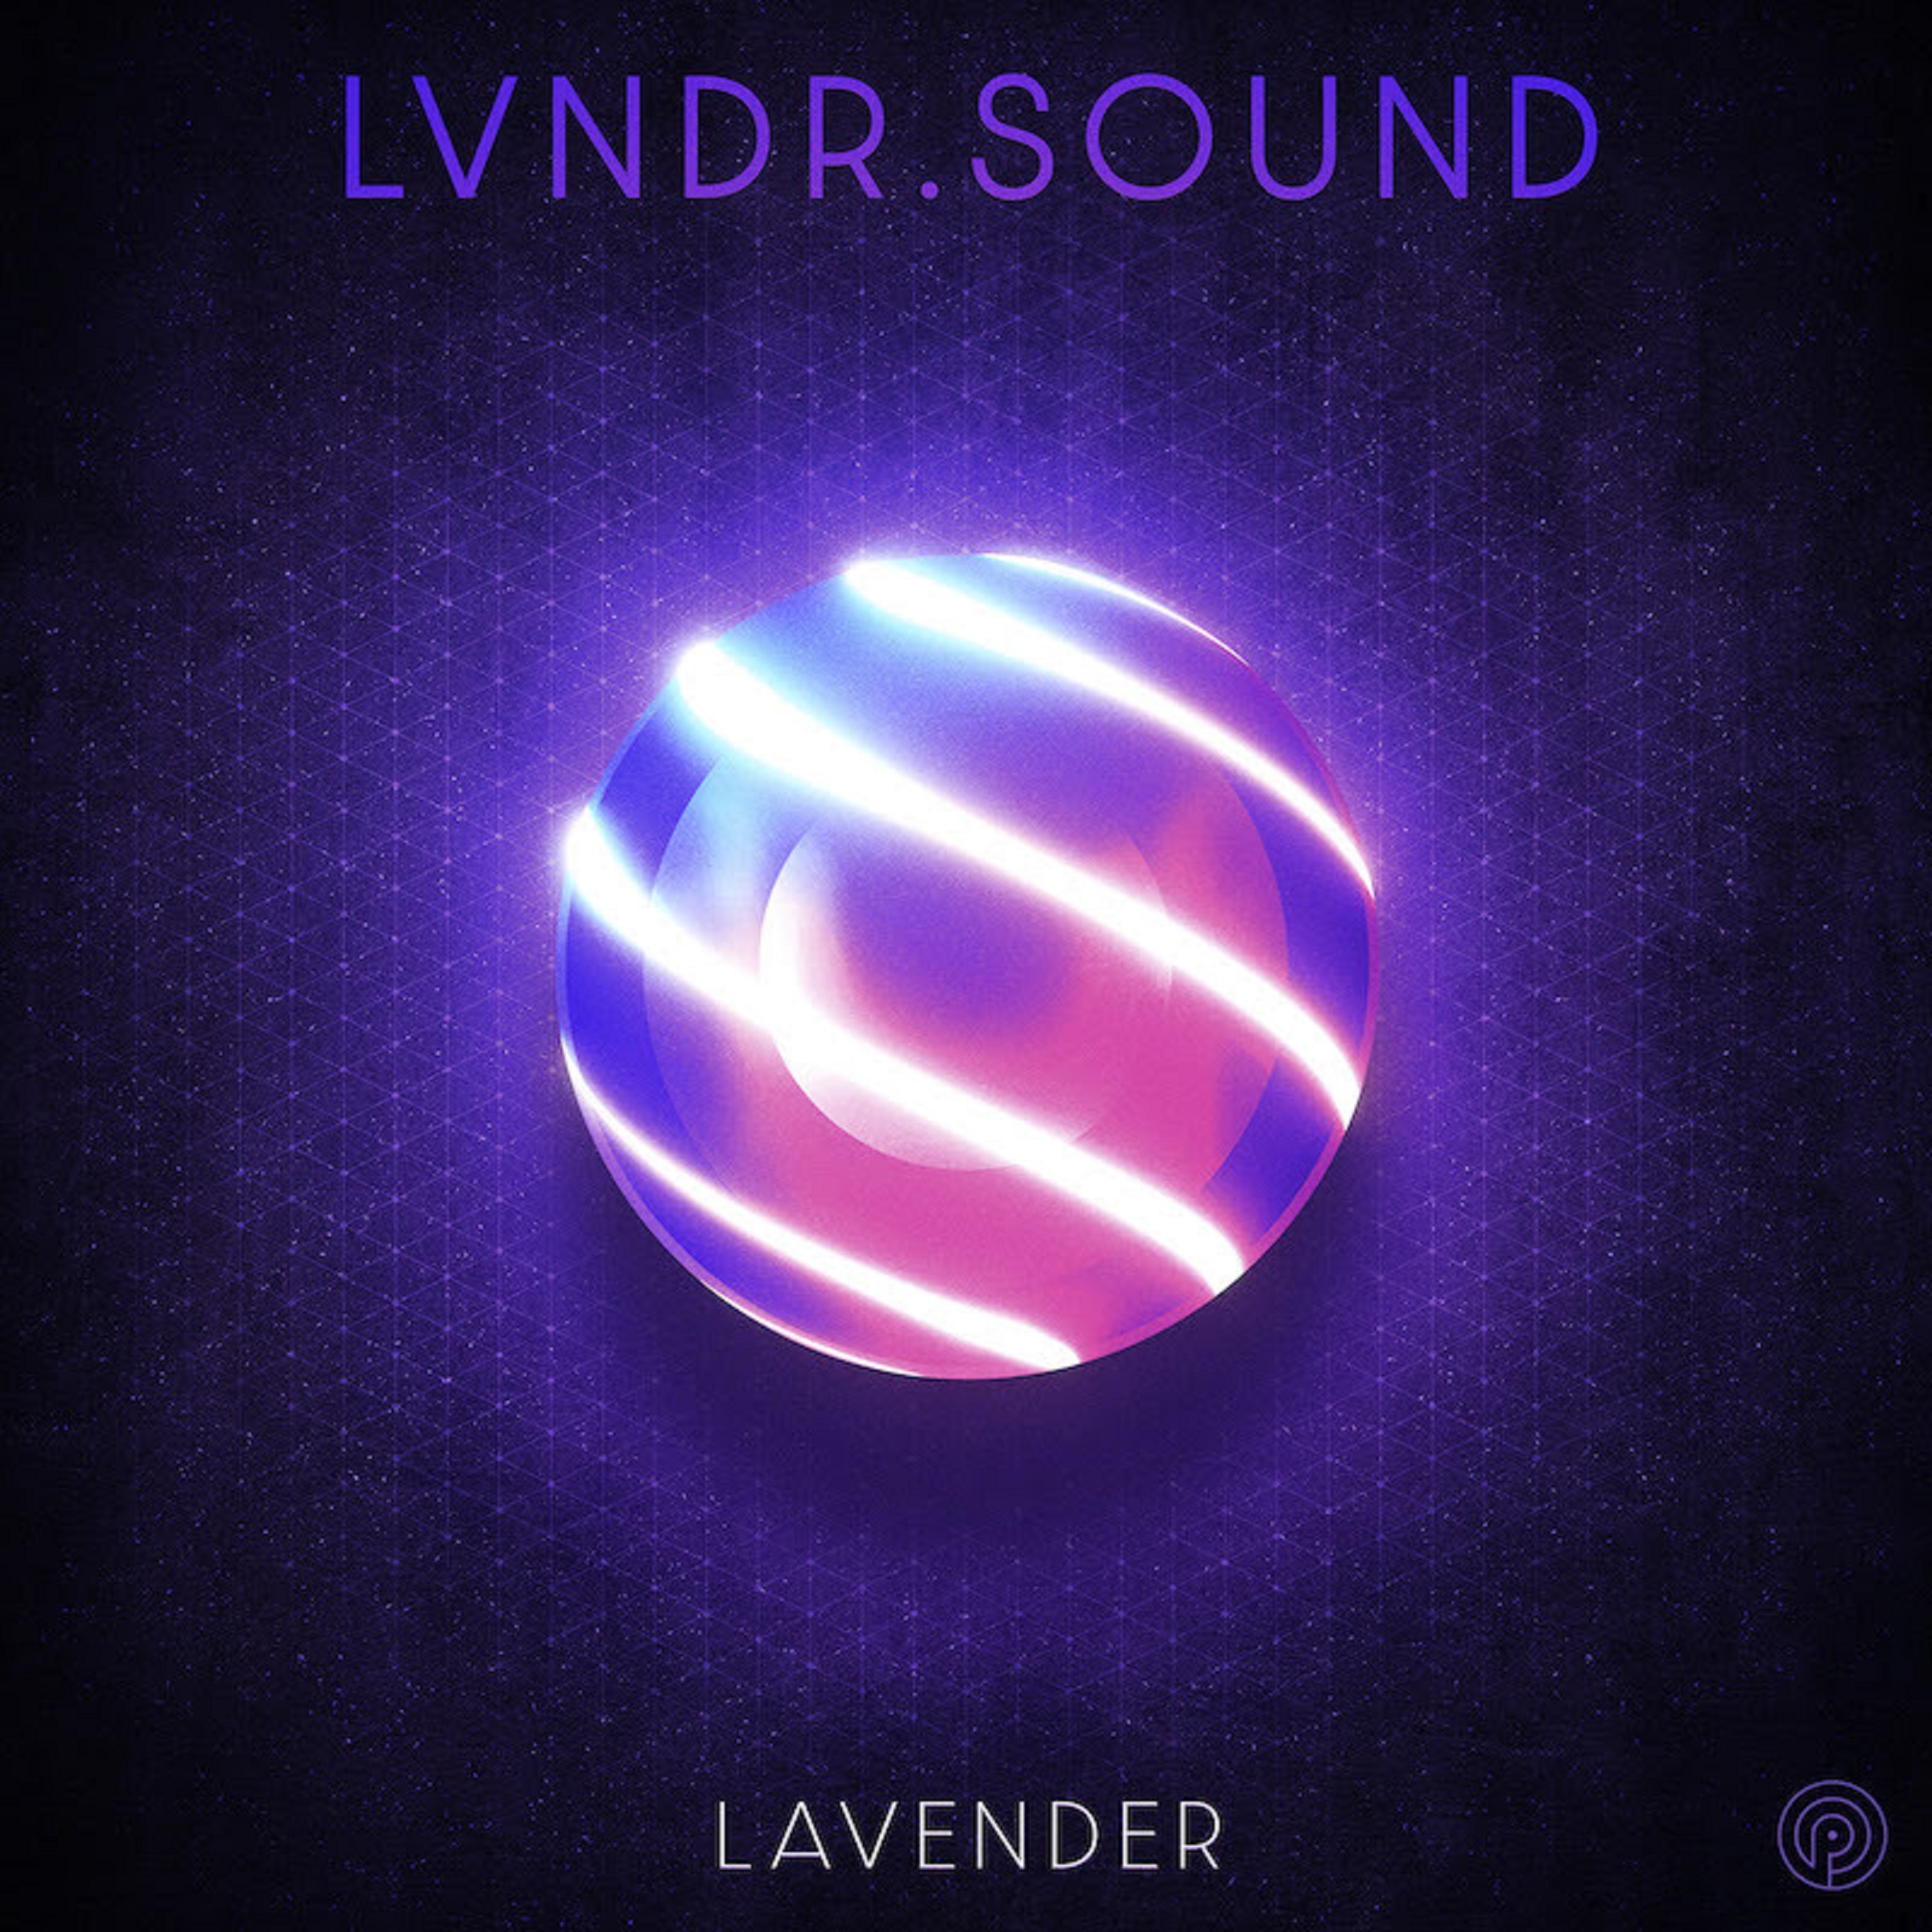 Future bass trio LVNDR.SOUND unveil debut LP Lavender